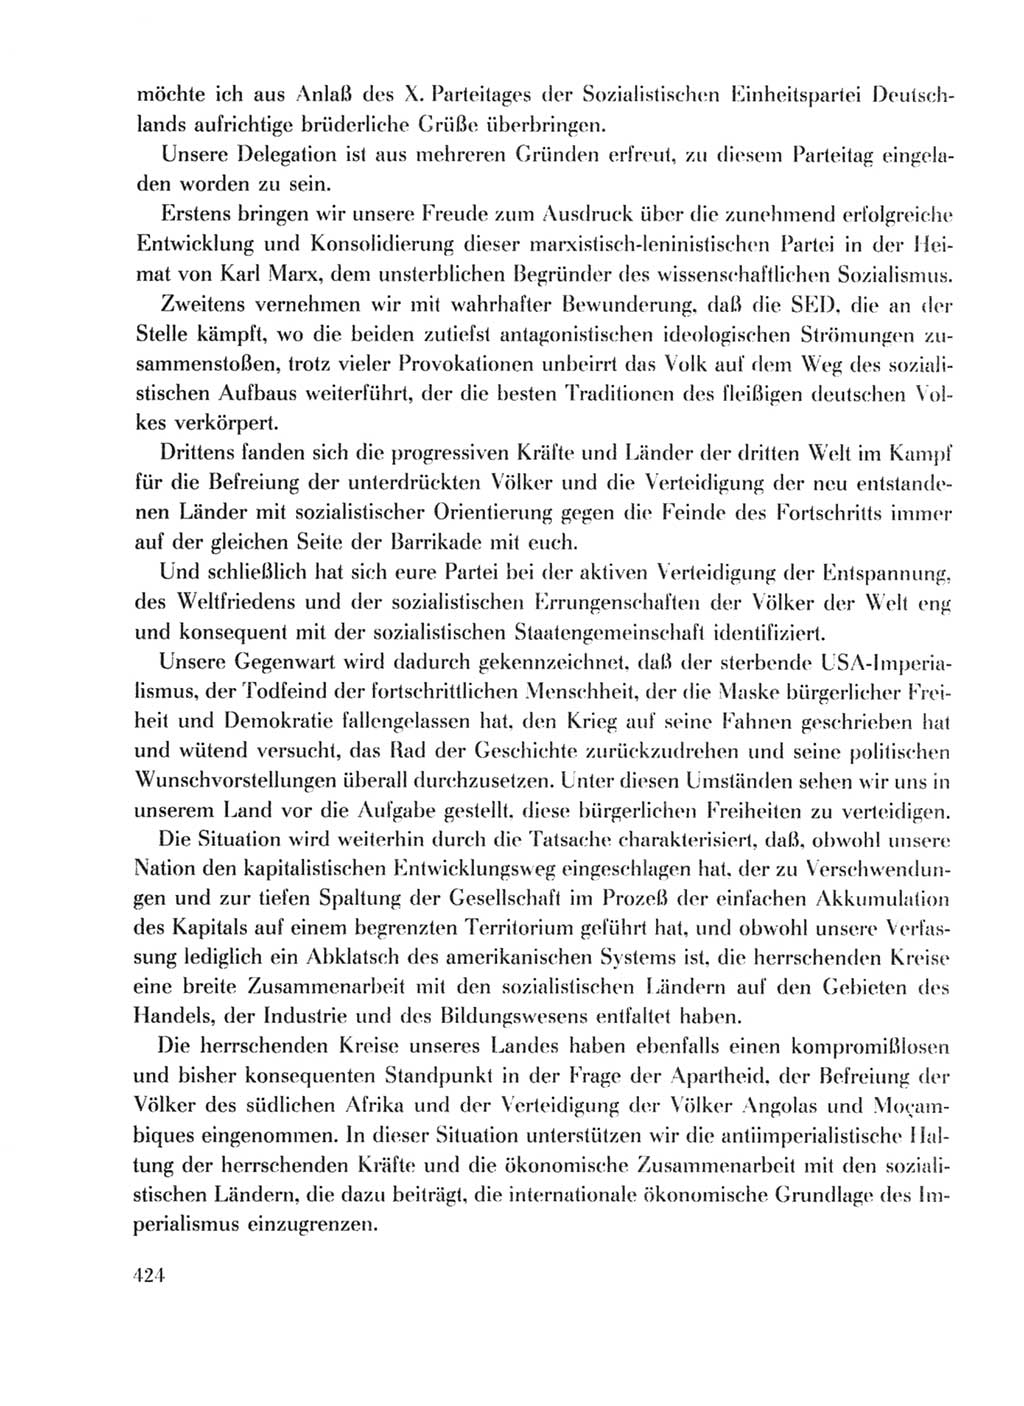 Protokoll der Verhandlungen des Ⅹ. Parteitages der Sozialistischen Einheitspartei Deutschlands (SED) [Deutsche Demokratische Republik (DDR)] 1981, Band 1, Seite 424 (Prot. Verh. Ⅹ. PT SED DDR 1981, Bd. 1, S. 424)